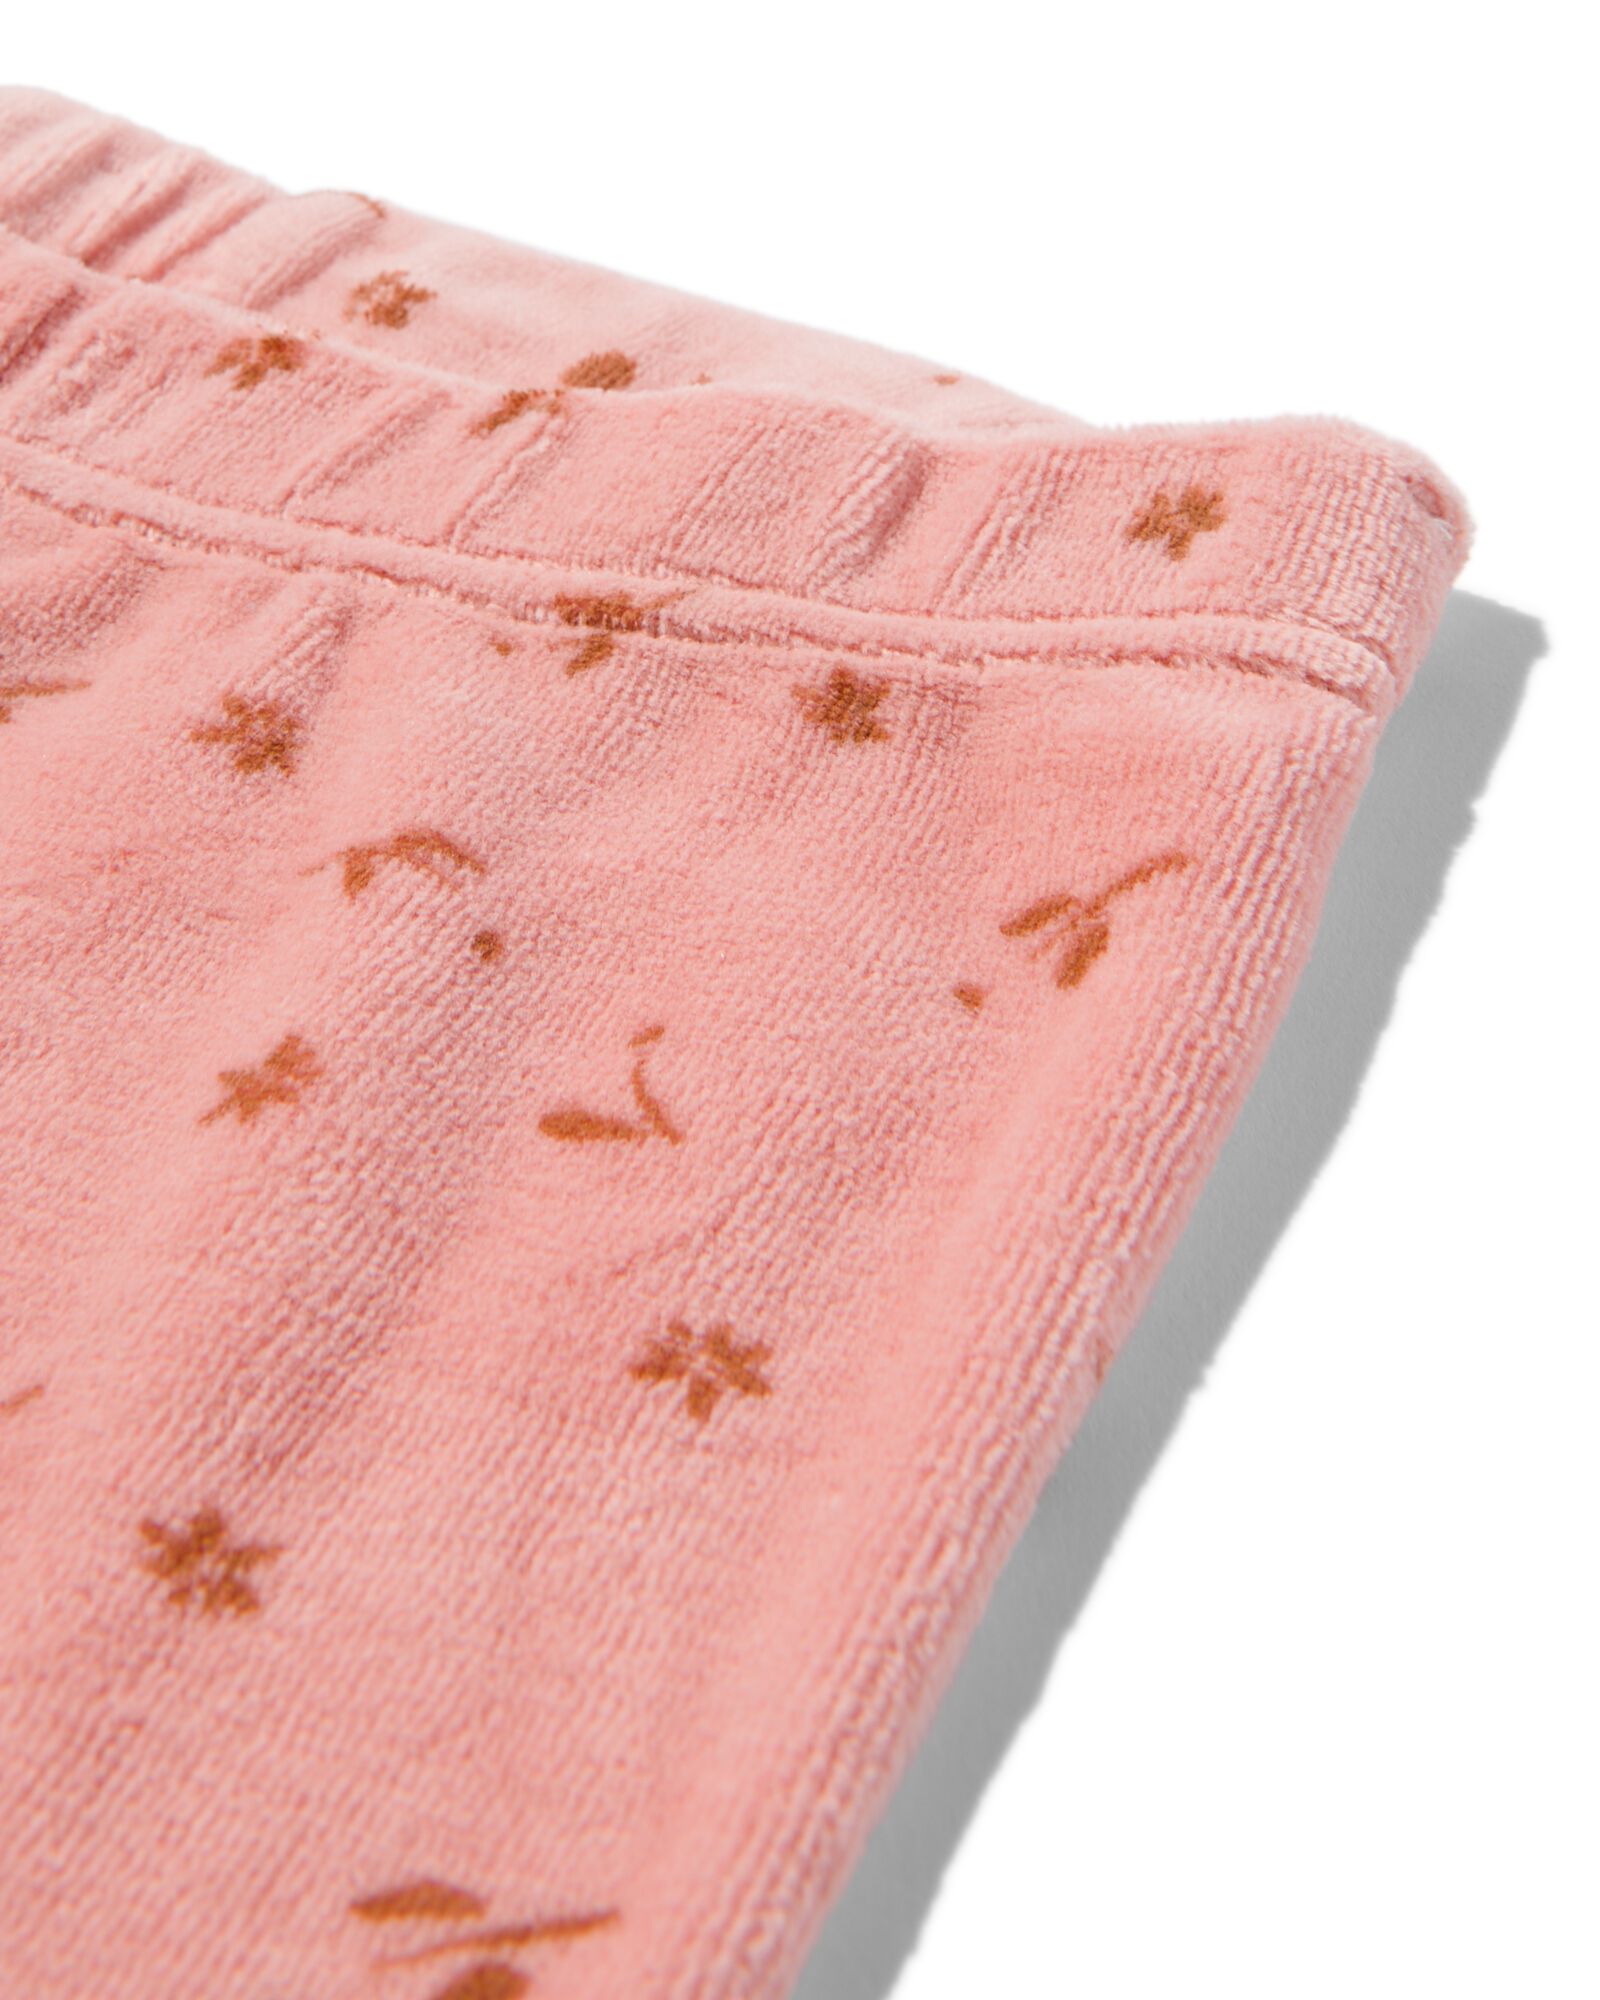 pyjama bébé velours fleurs vieux rose 74/80 - 33397721 - HEMA